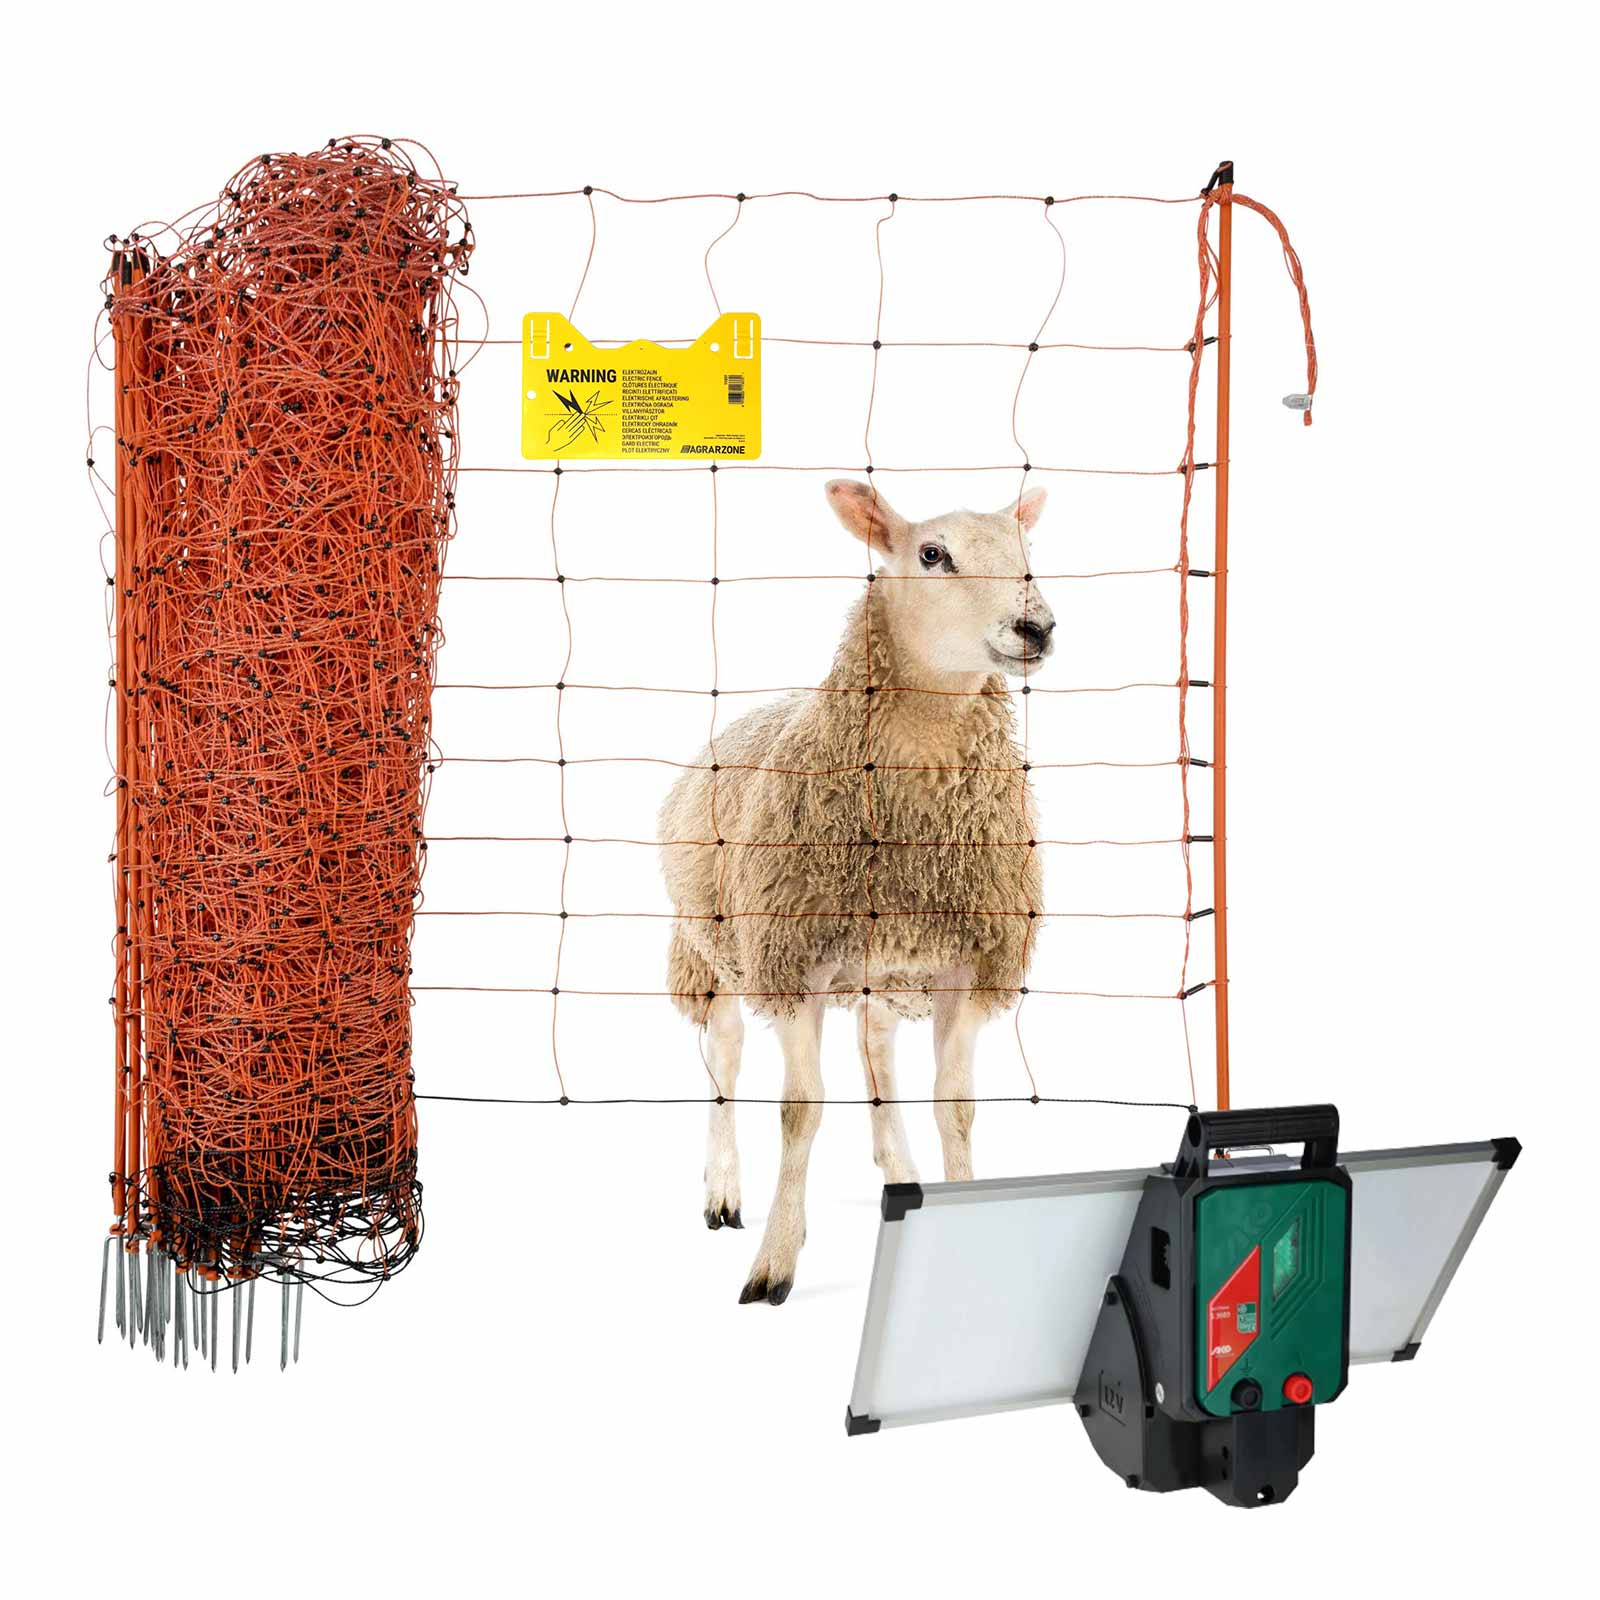 Kit clôture électrique solaire Agrarzone Sun Power 3000 12V, 4,2J, filet 50m x 90cm, orange-jaune, pour moutons